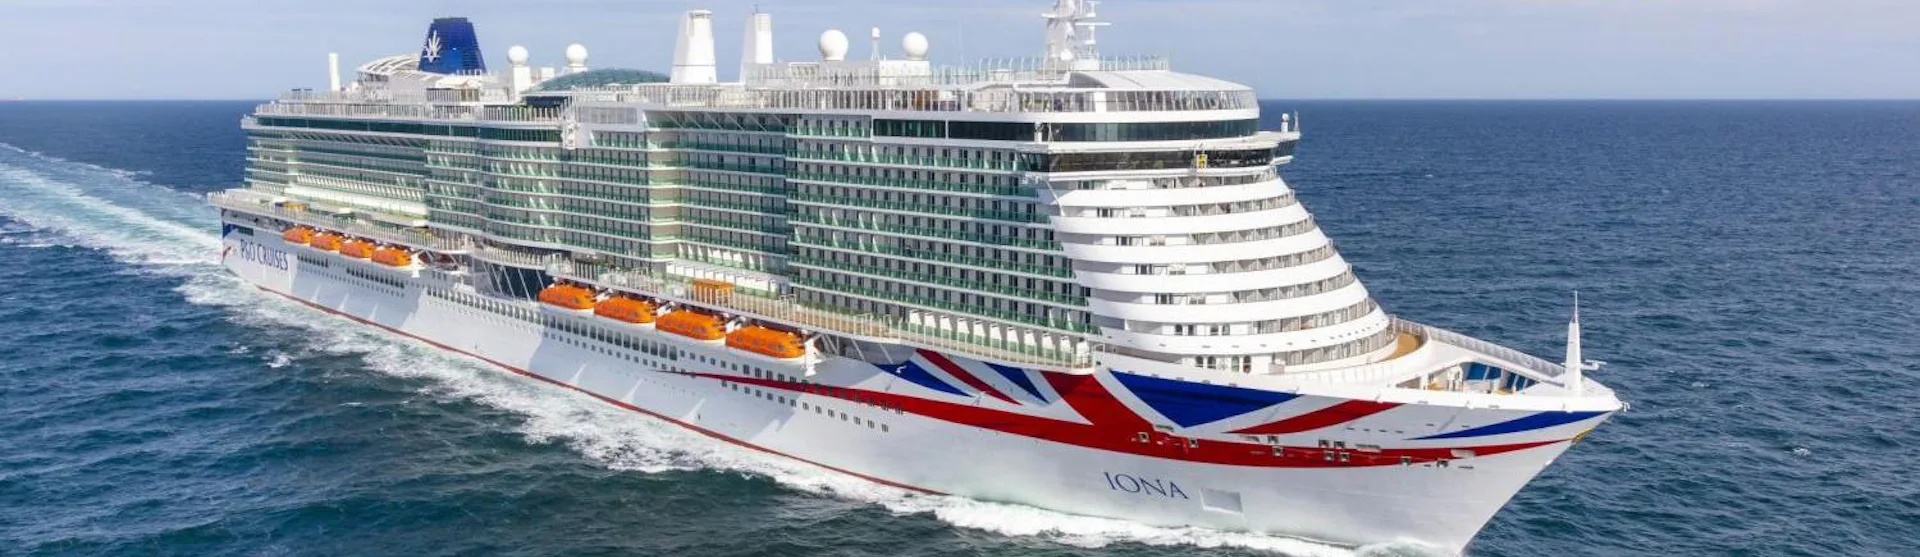 P&O Cruises - Iona